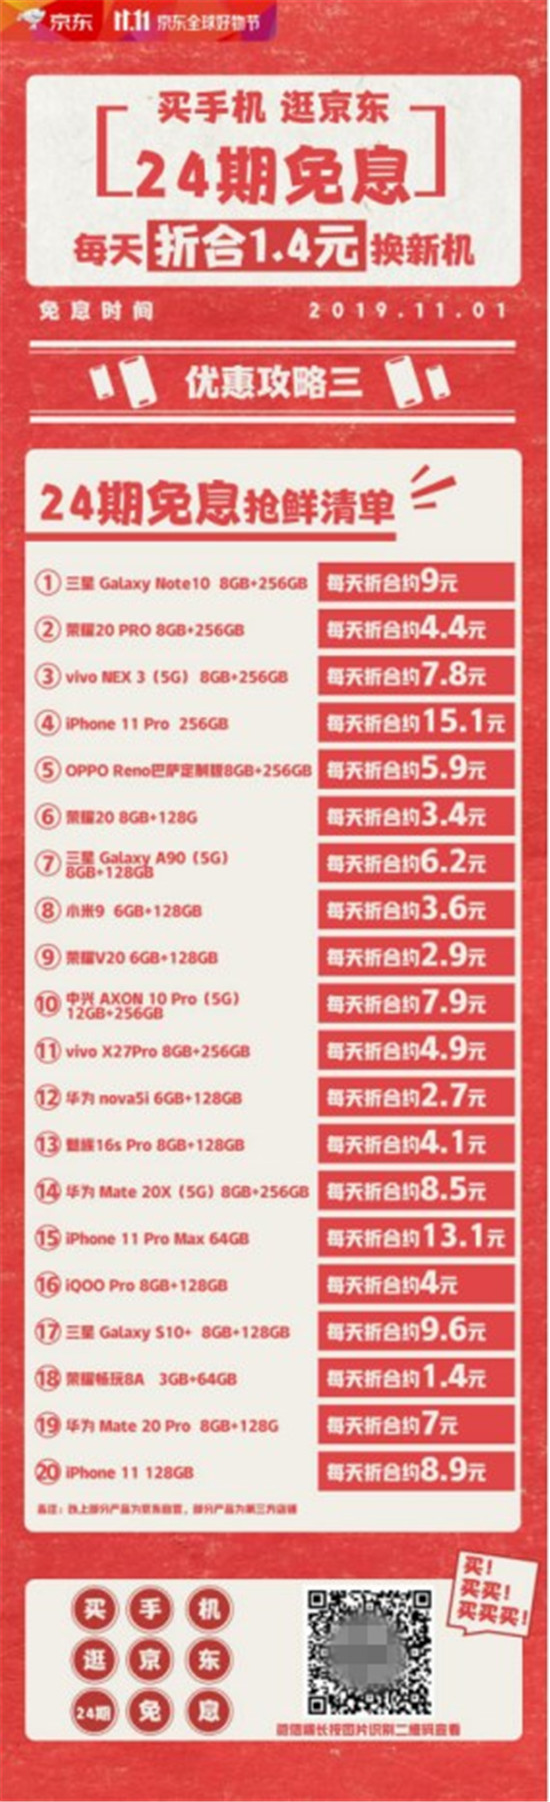 京东11.11手机24期免息！每天少喝一罐可乐就能买李现同款手机